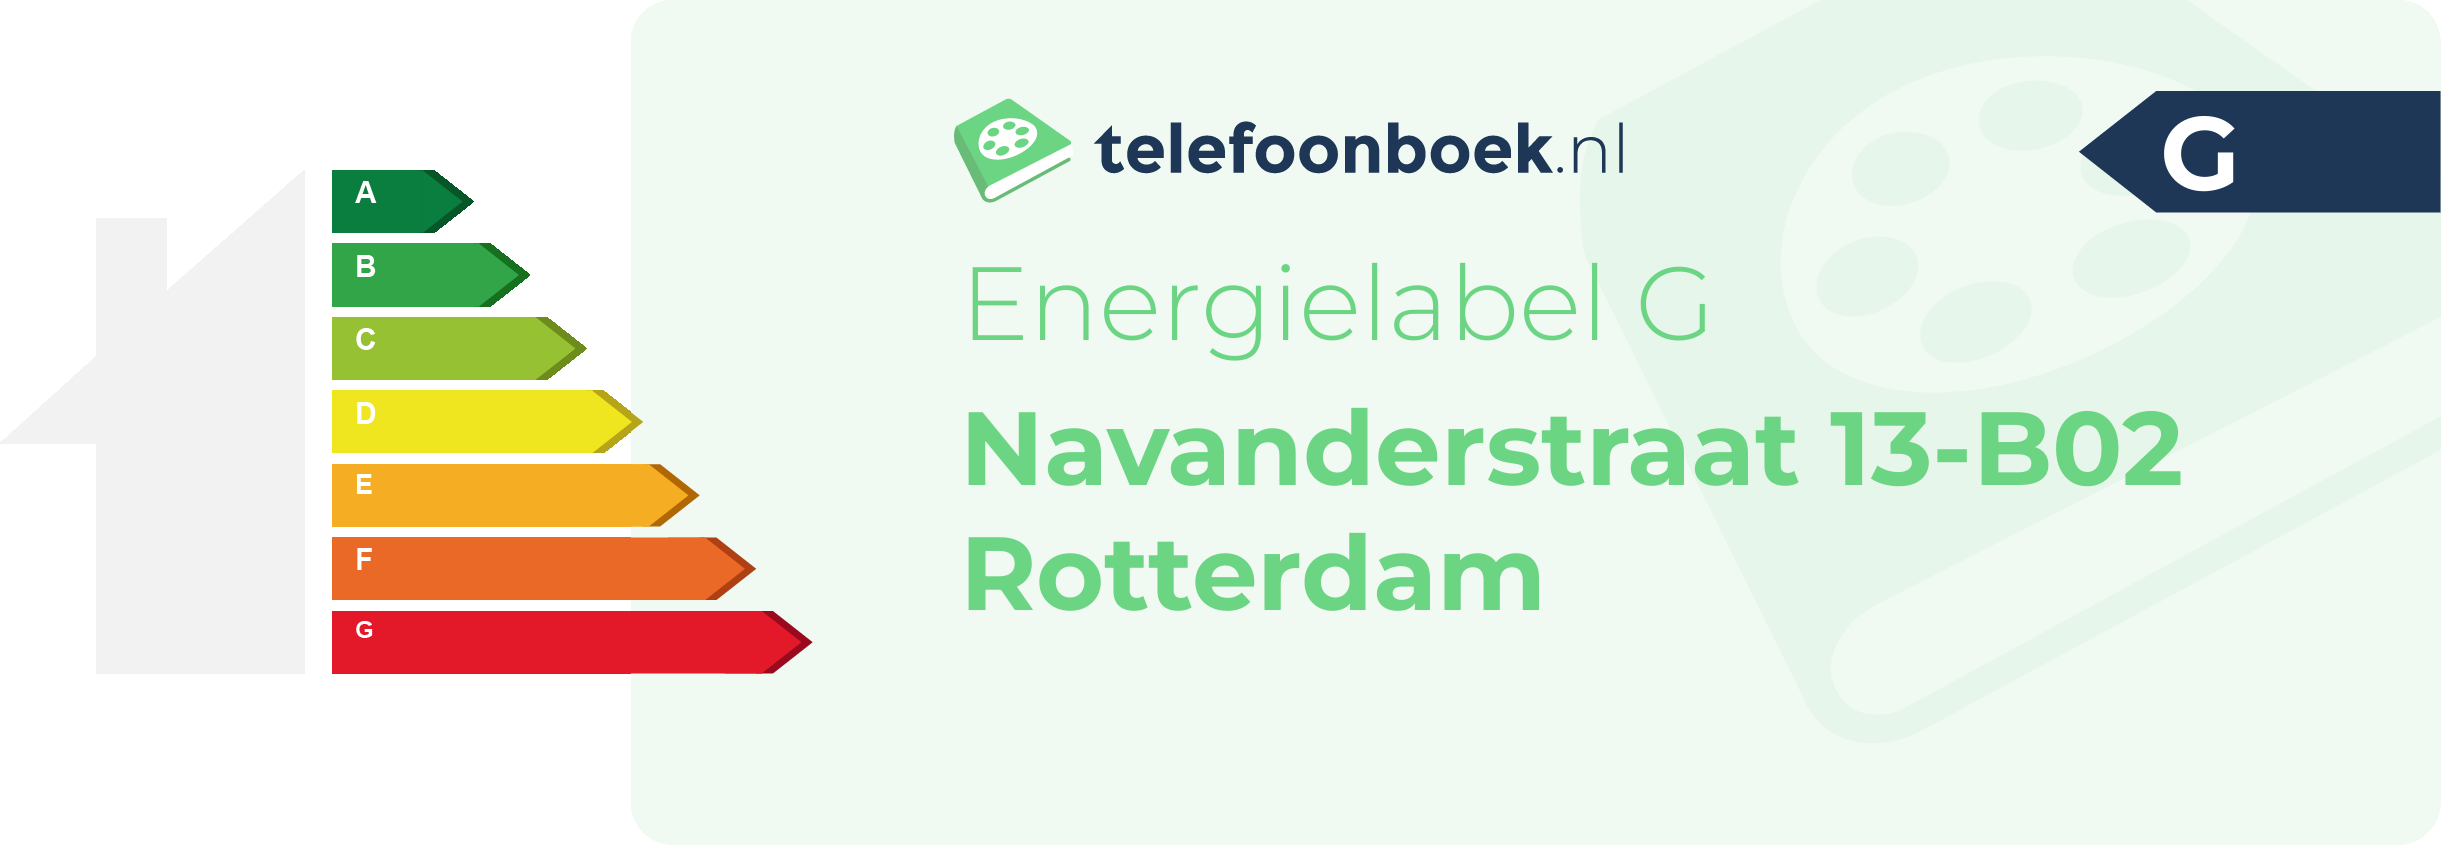 Energielabel Navanderstraat 13-B02 Rotterdam